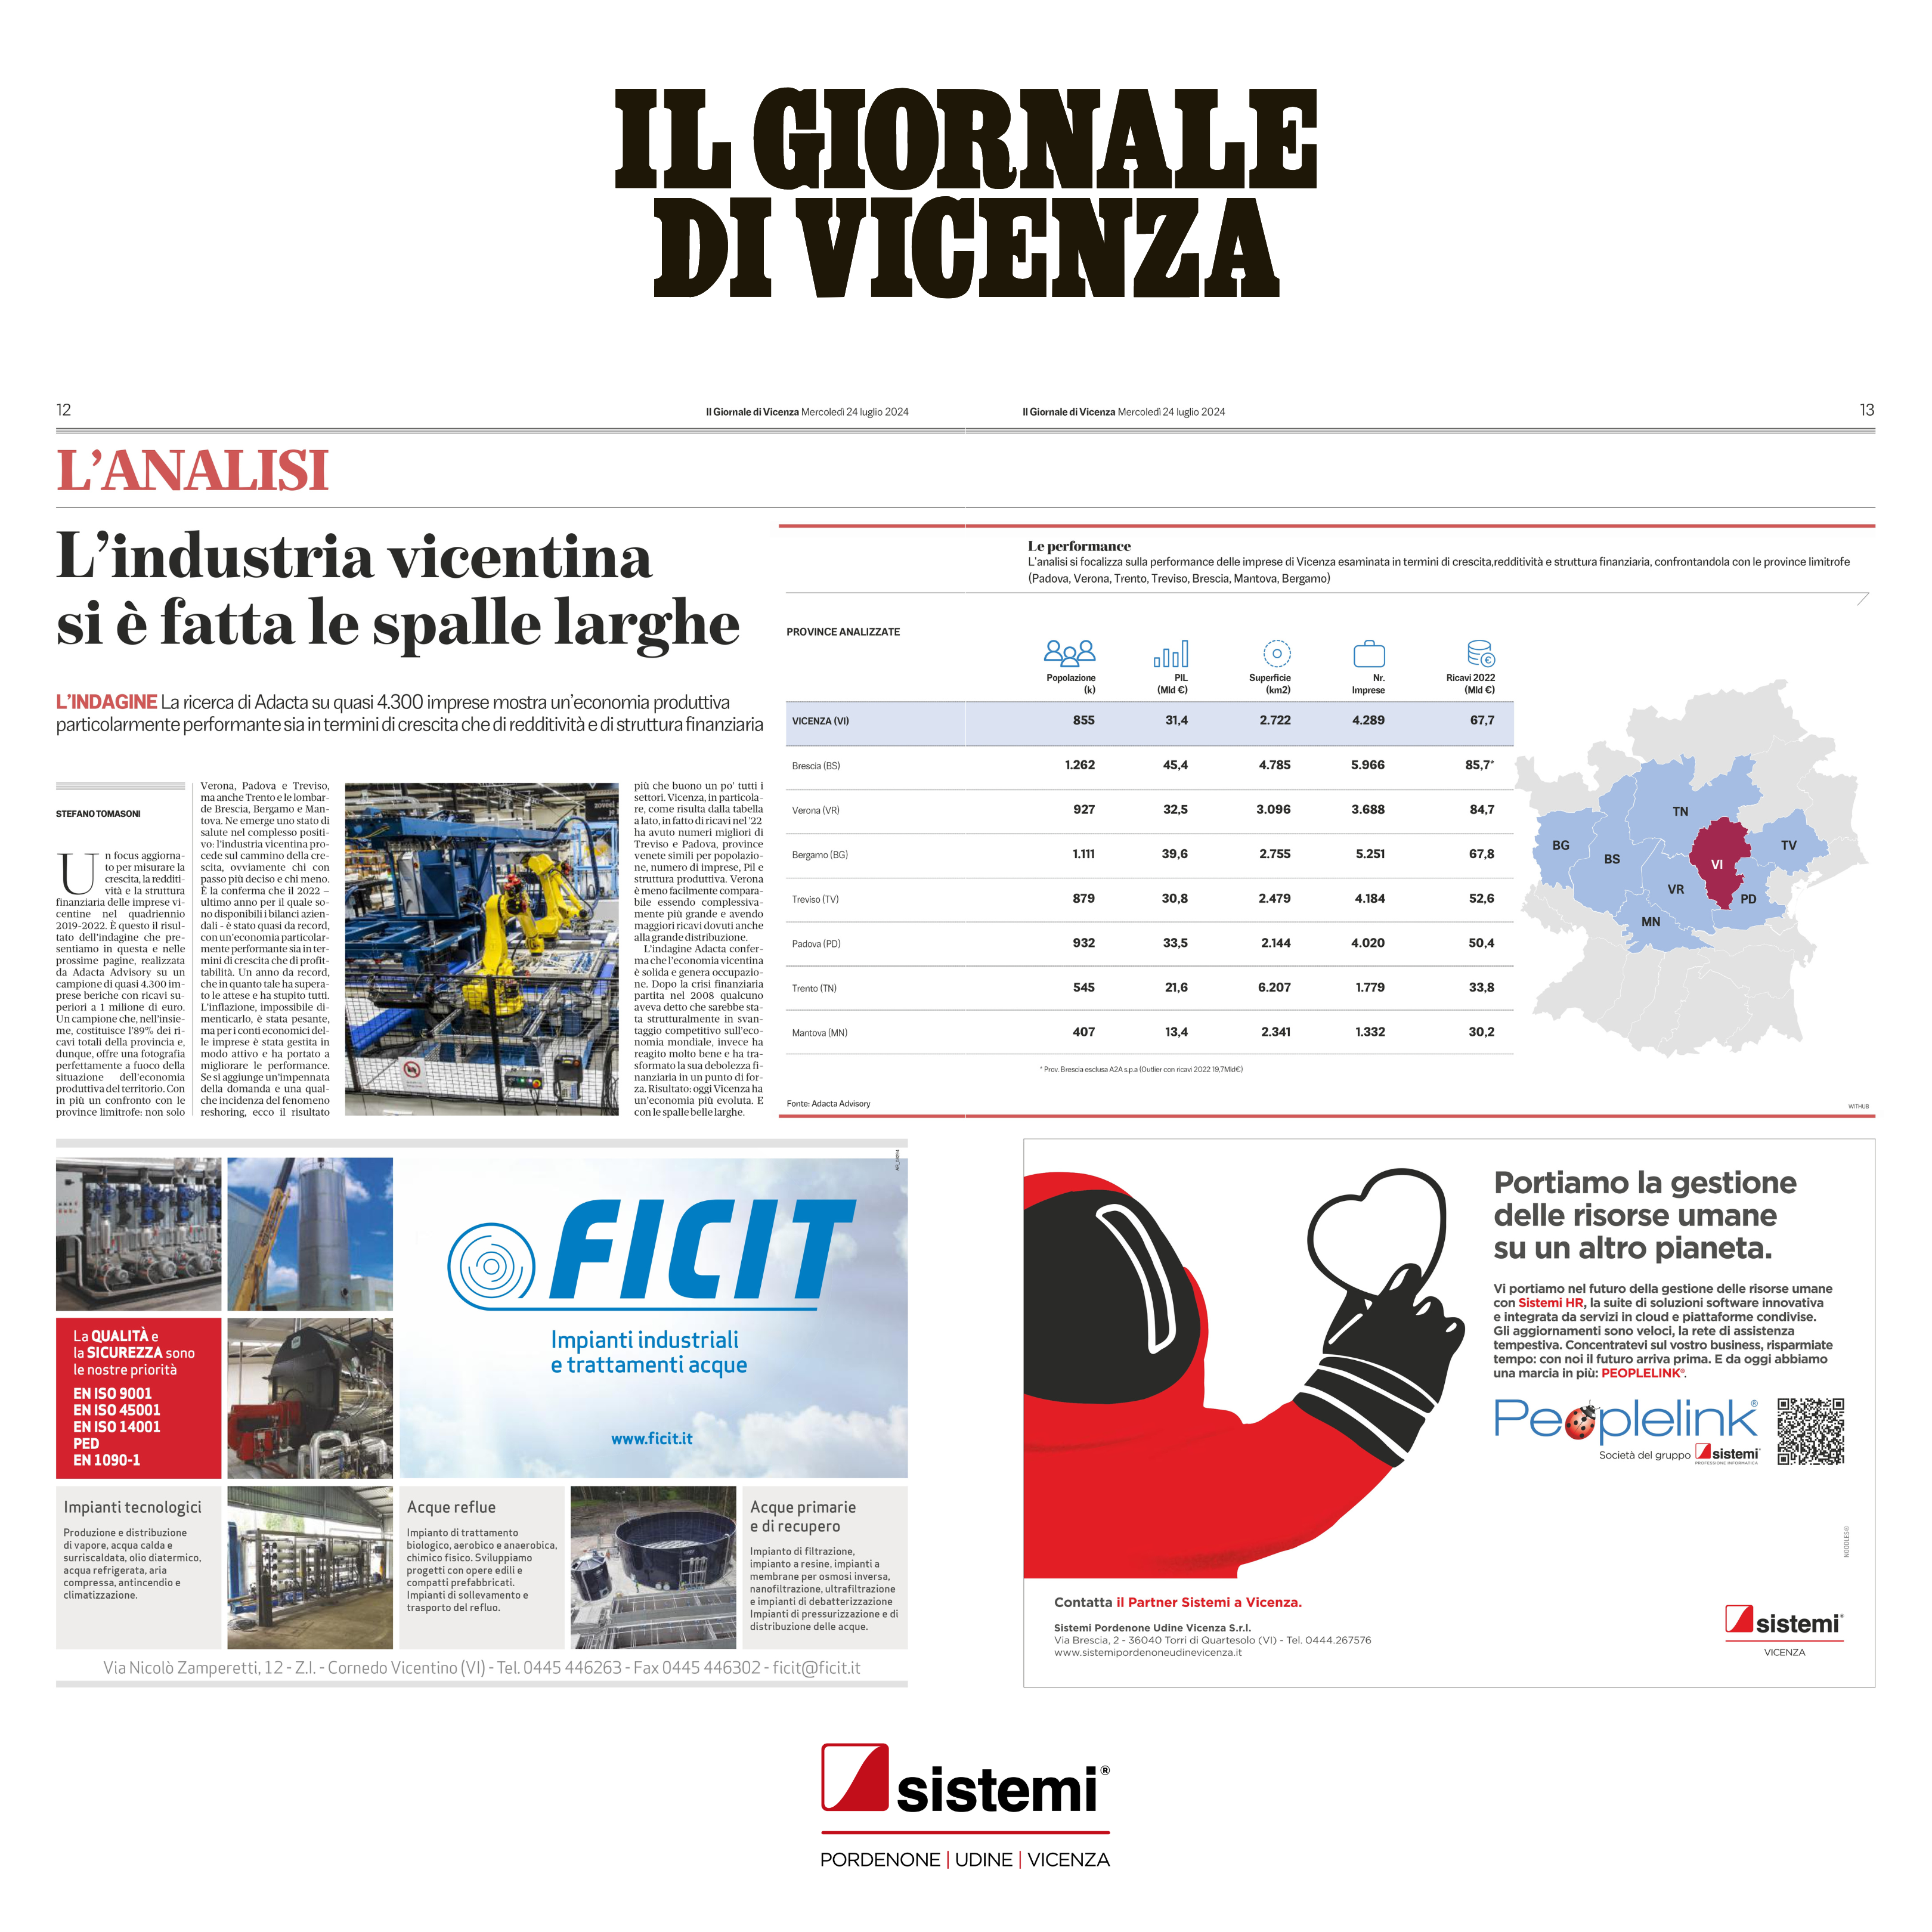 Il Giornale di Vicenza "Guerra e Pace Geopolitica e Competitività"